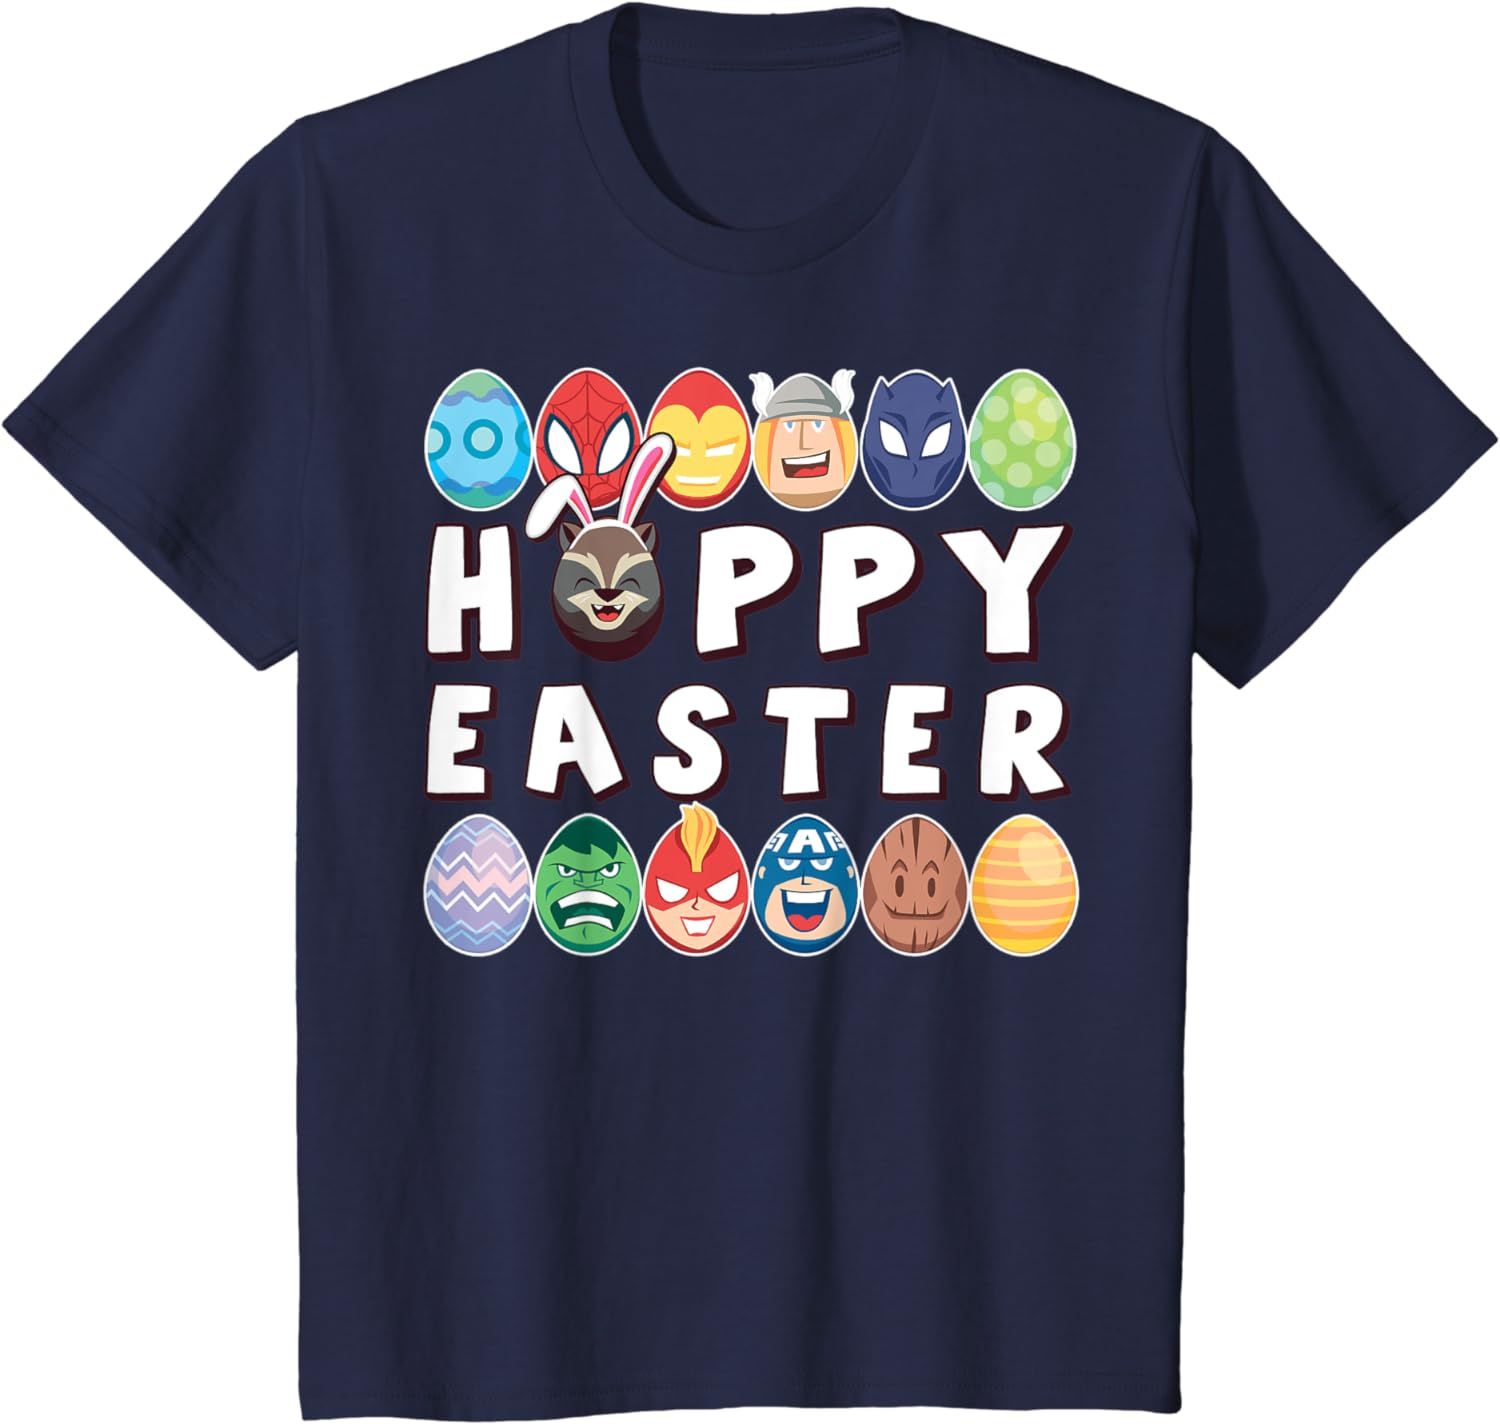 Marvel Easter Hoppy Easter Group Eggs T-Shirt | Amazon (US)